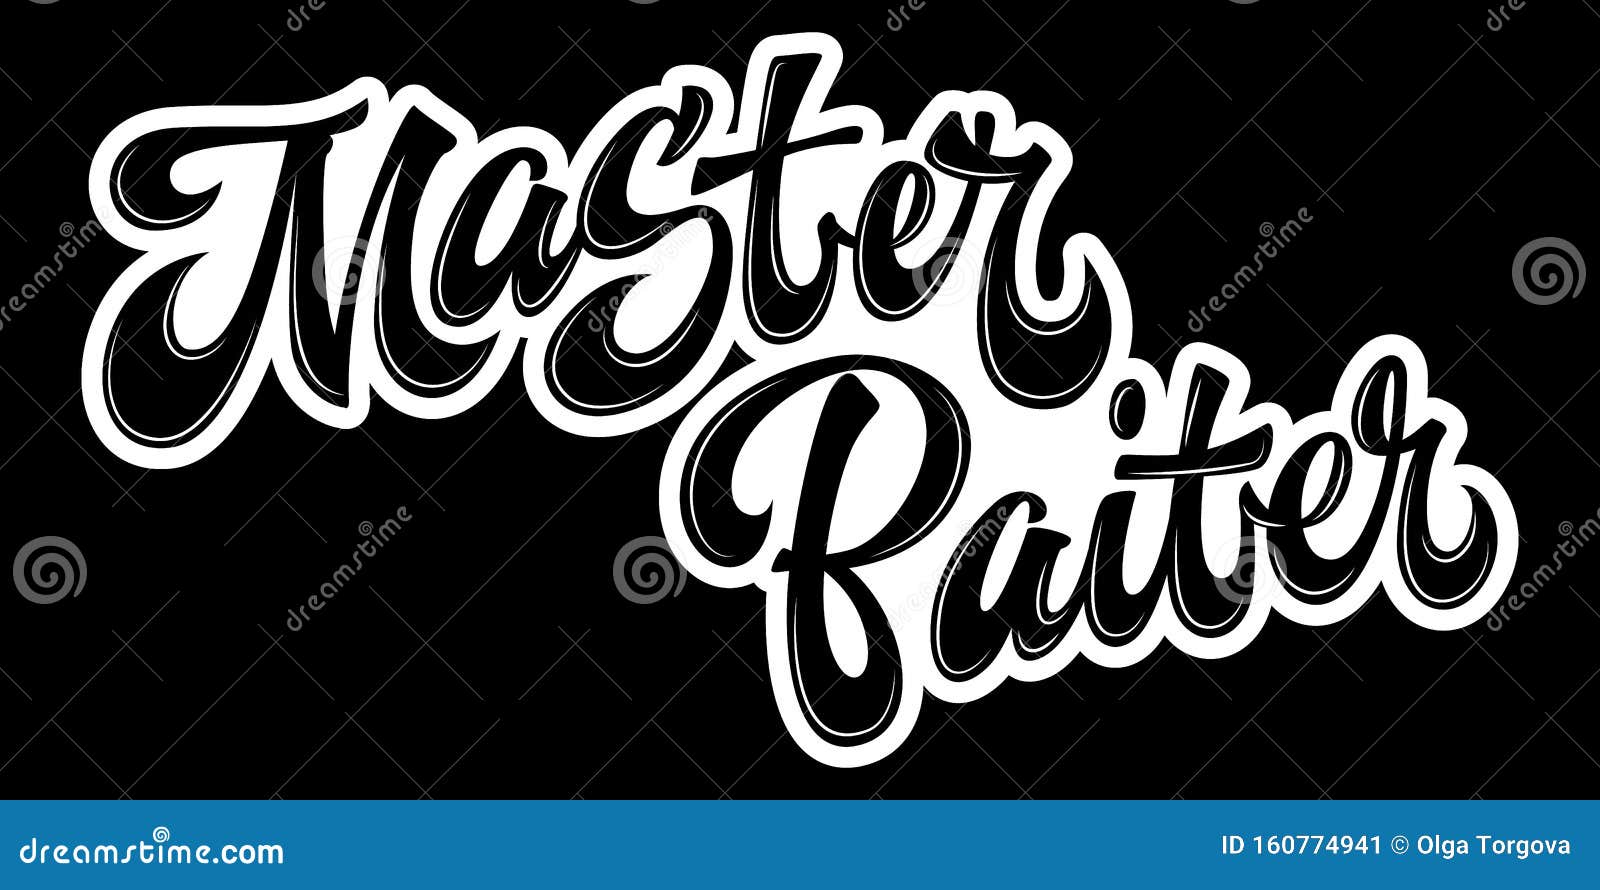 Master Baiter - Hand Drawn Lettering Logo Phrase. Stock Vector